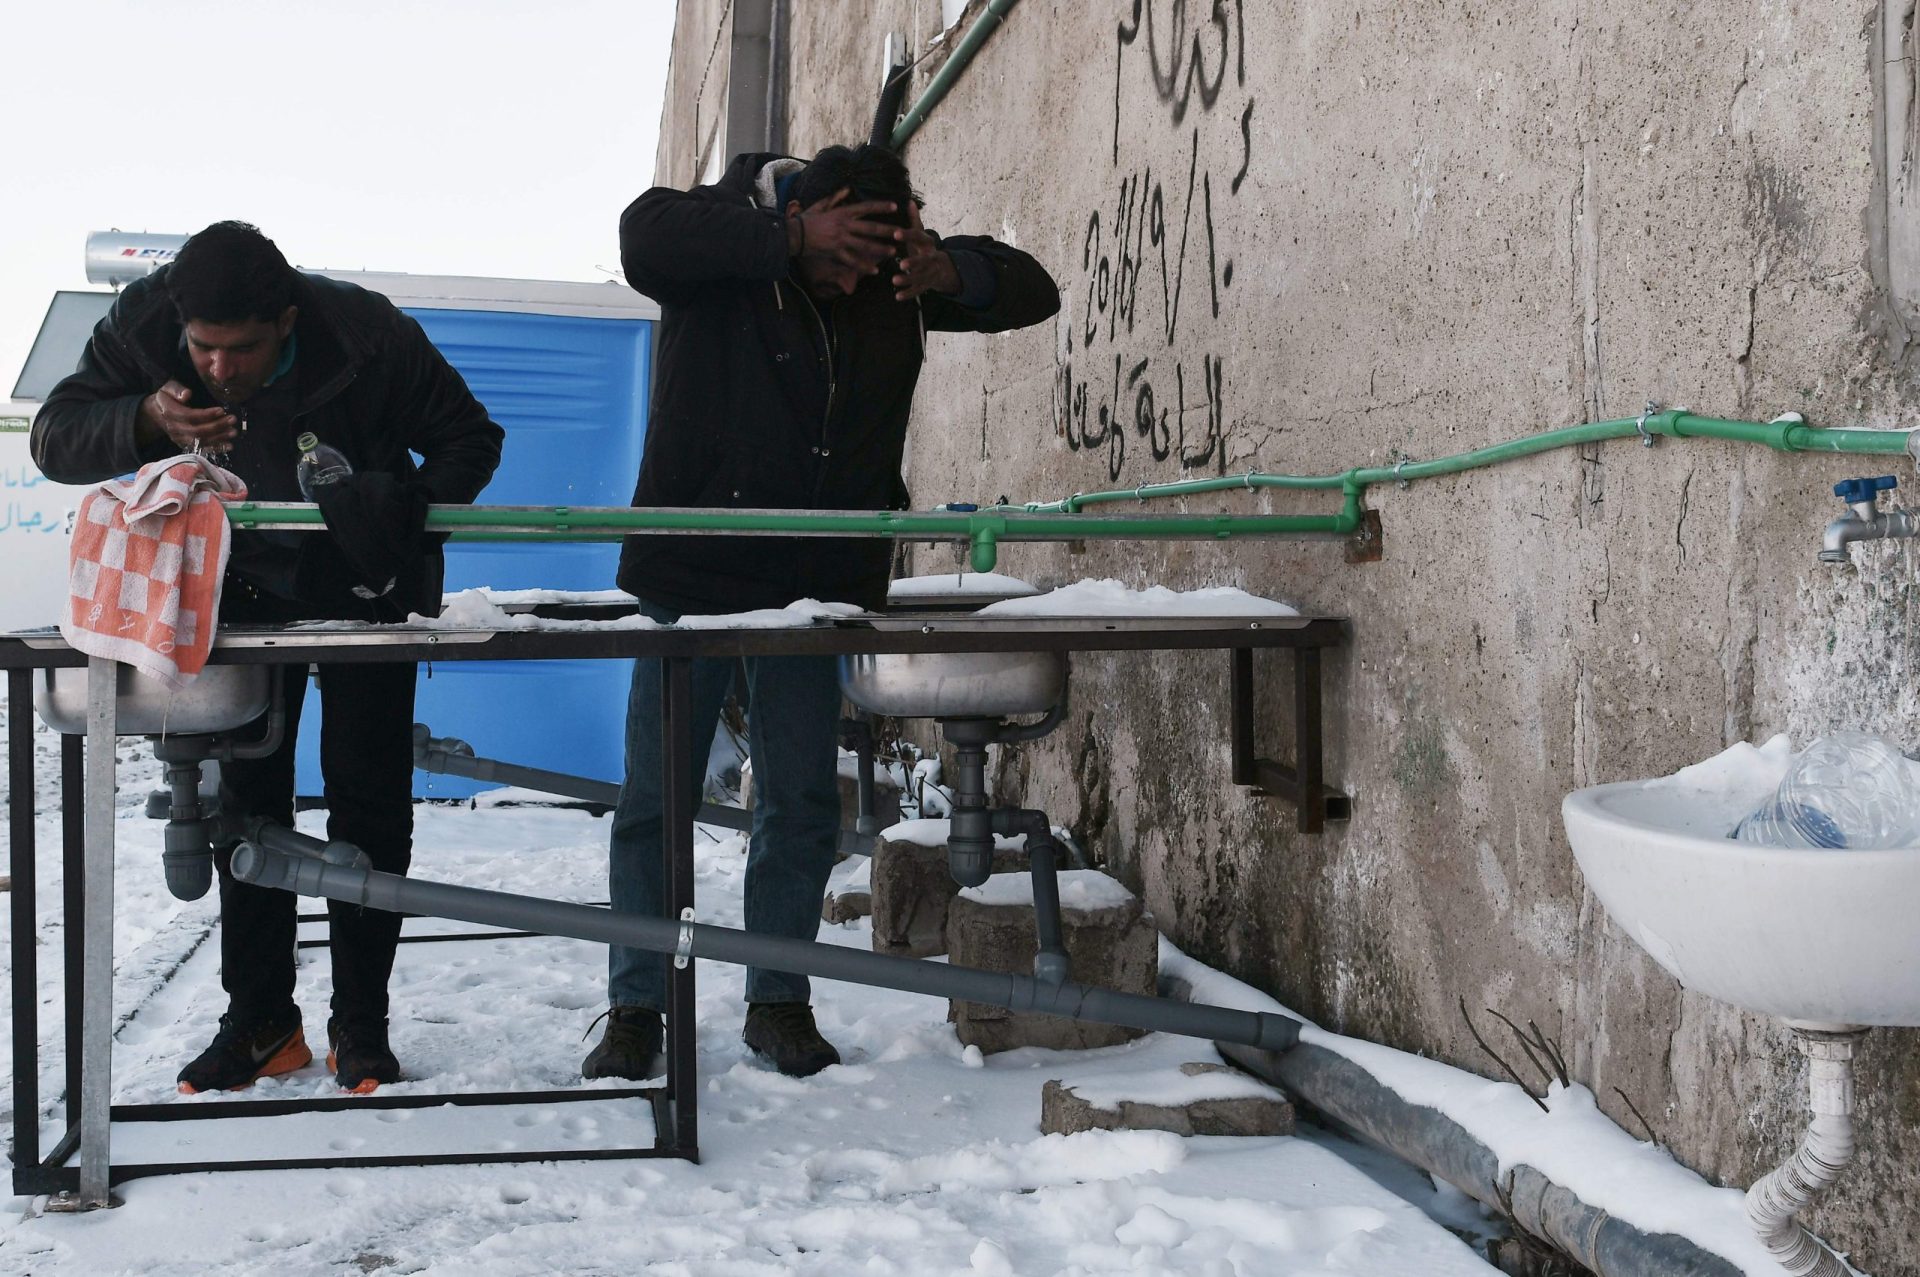 Refugiados em risco de morrer com o frio grego